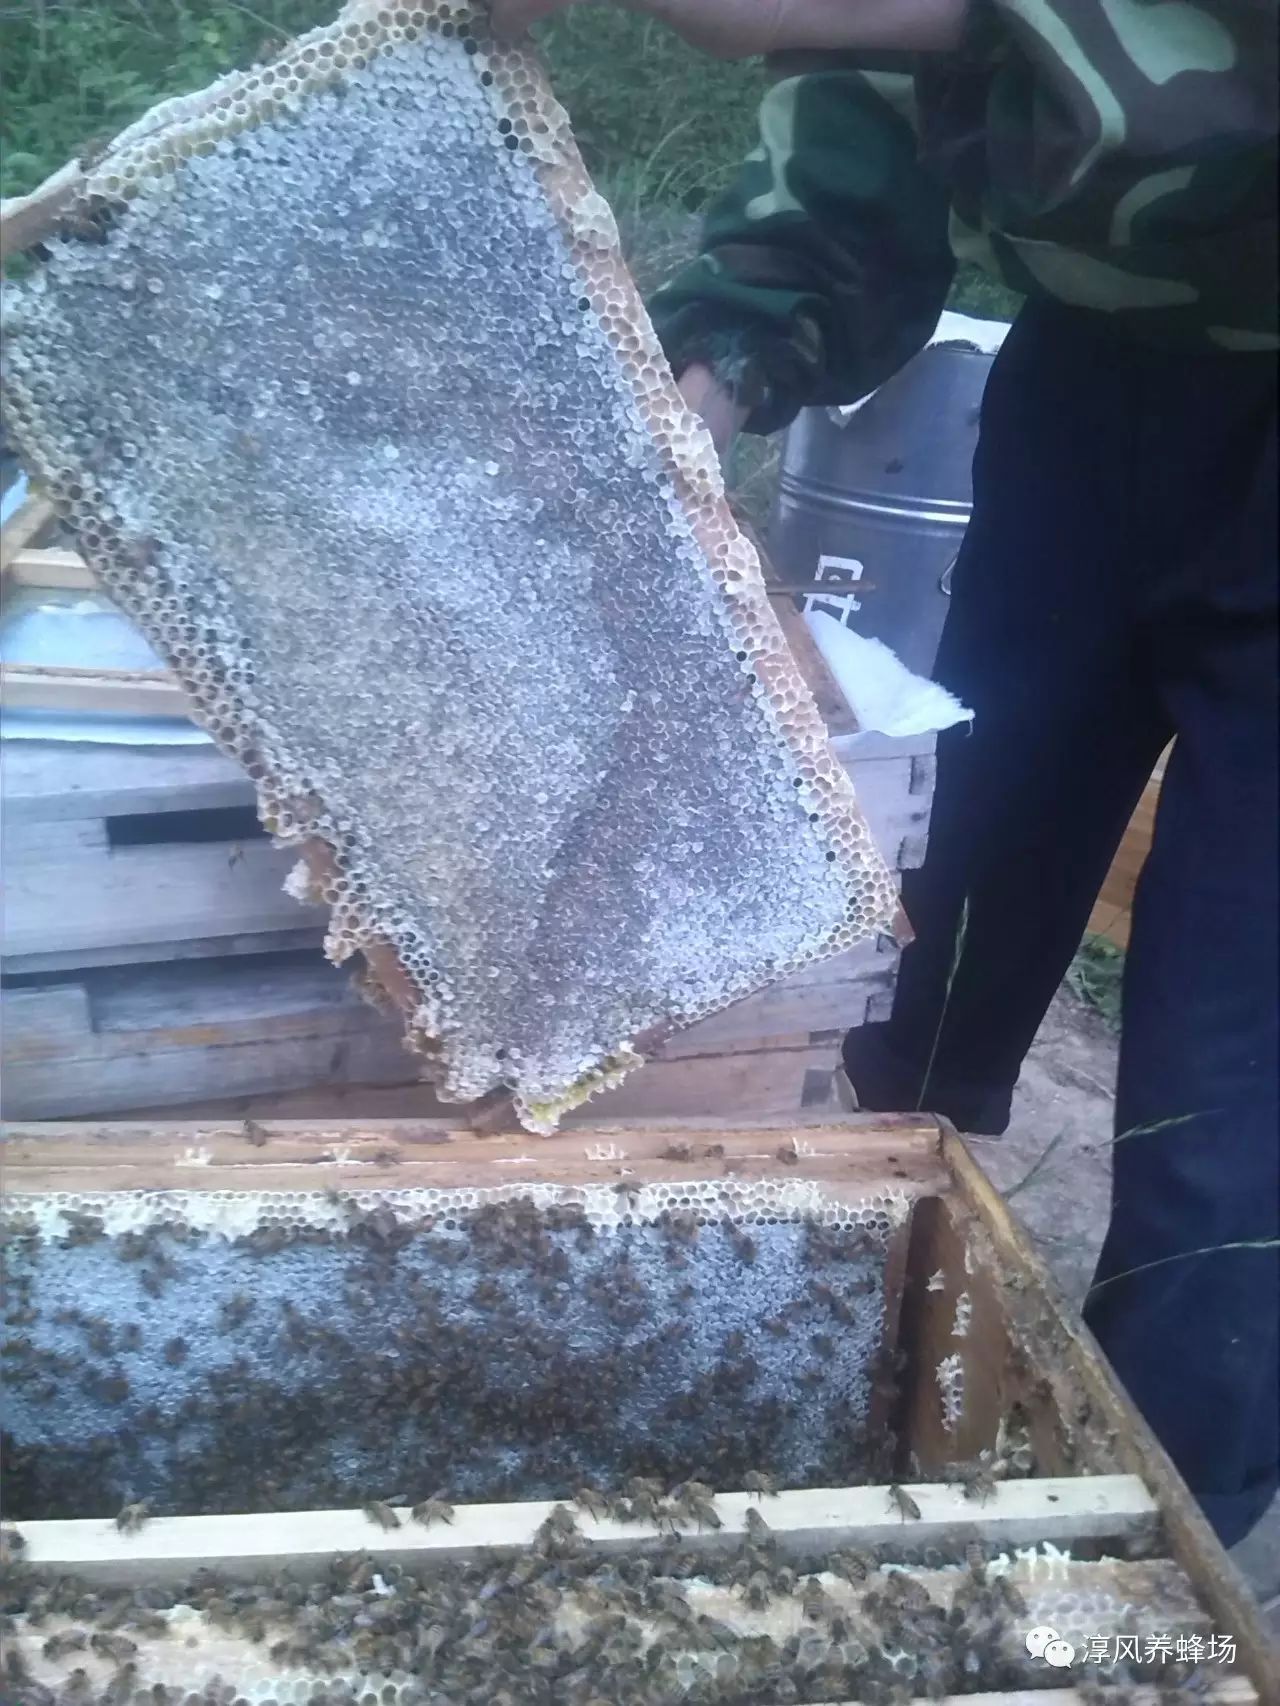 蜂蜜蜂王浆加工技术 蜂蜜有酒精味是怎么回事 澳大利亚蓝山蜂蜜价格 红茶姜片蜂蜜能减肥吗 蜂蜜海藻面膜怎么调